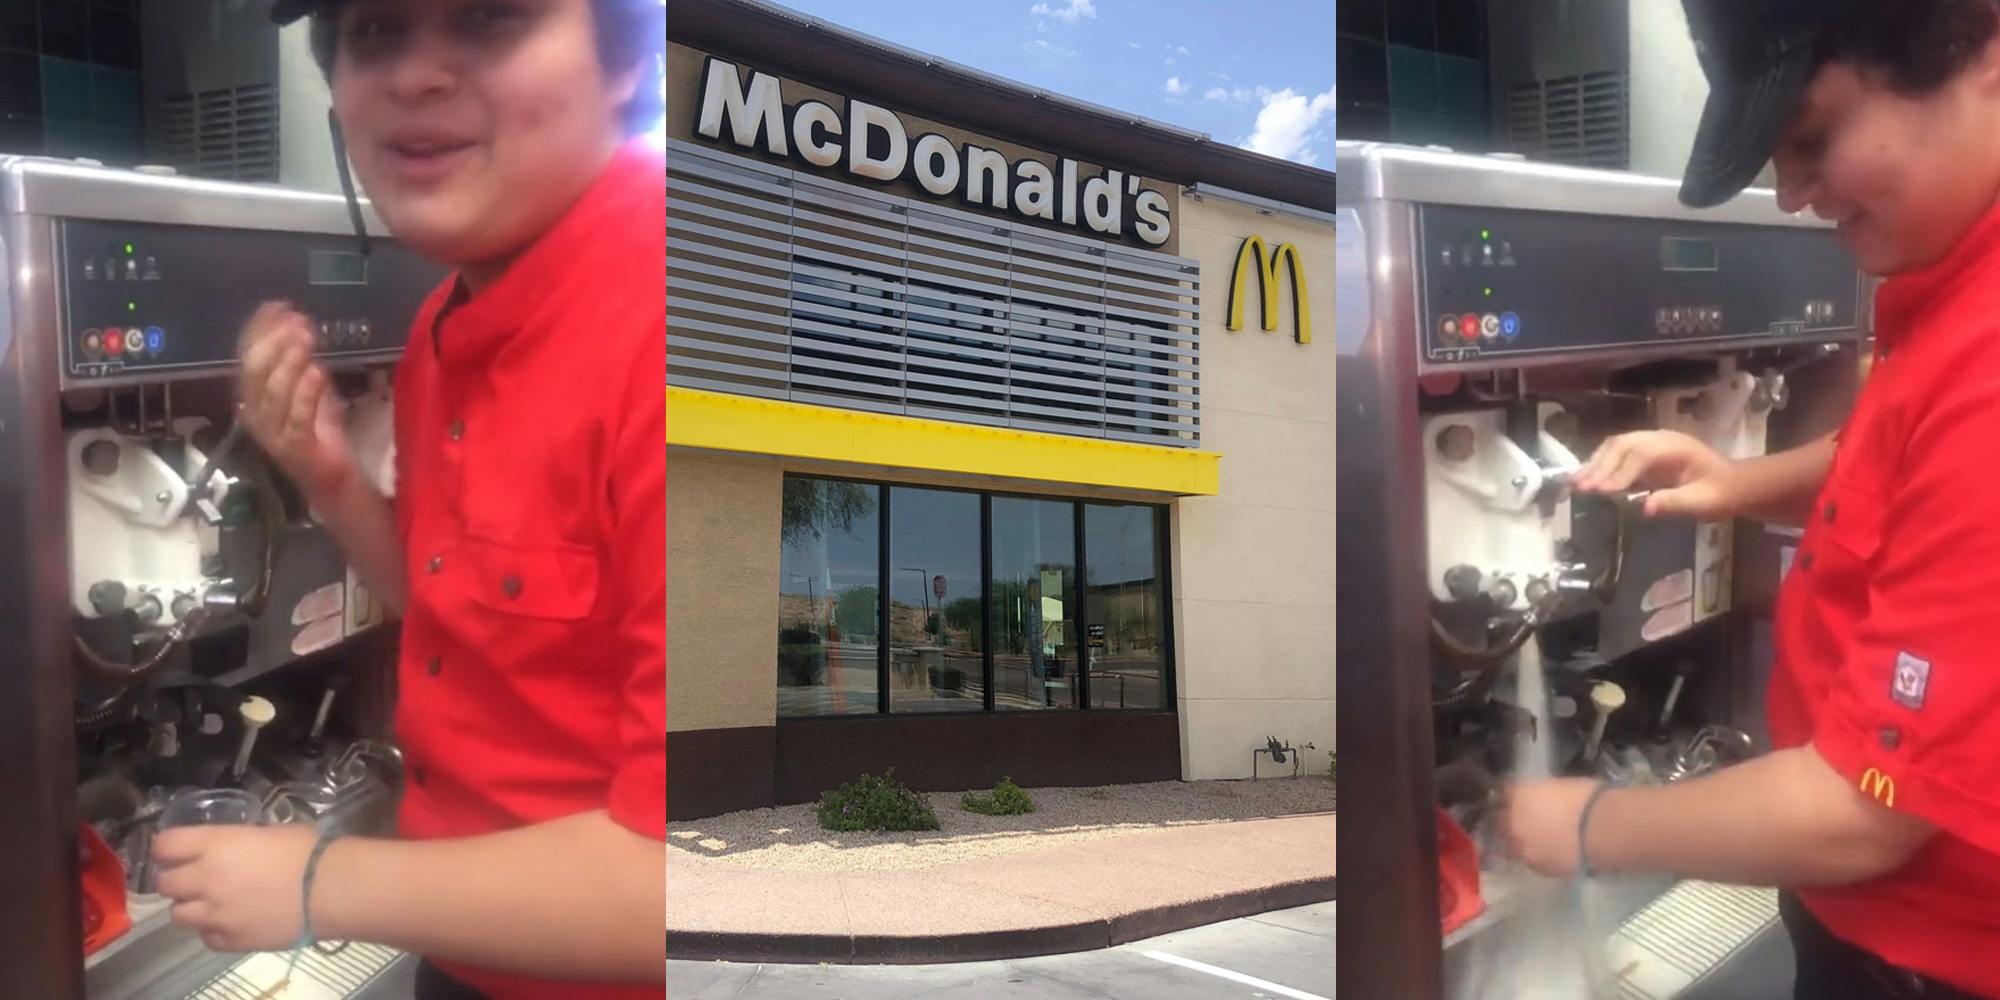 McDonald's employee using ice cream machine (l) McDonald's building with signs (c) McDonald's employee using ice cream machine (r)